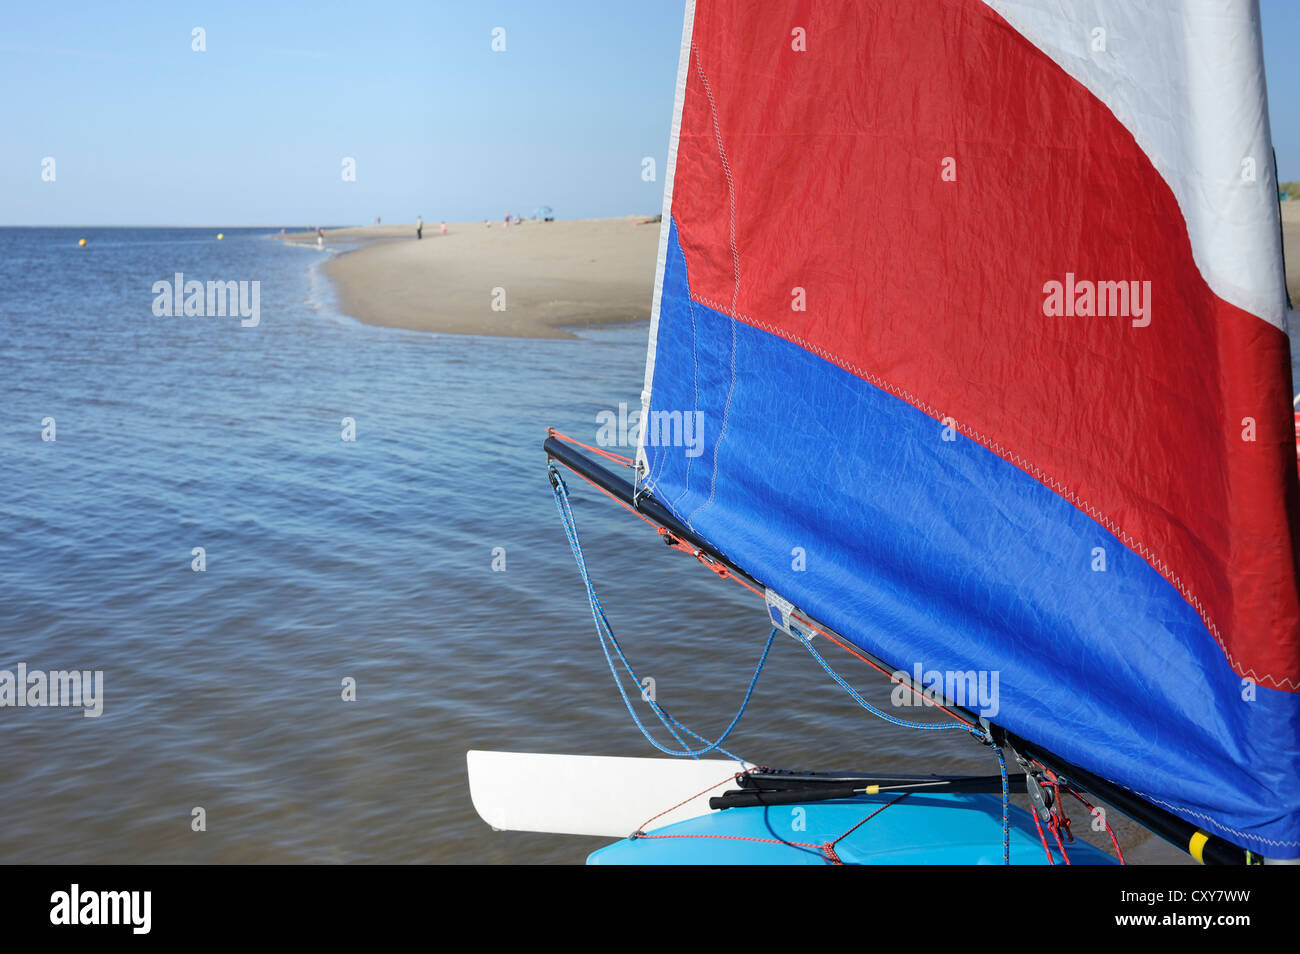 Dingy sail near a beach Stock Photo